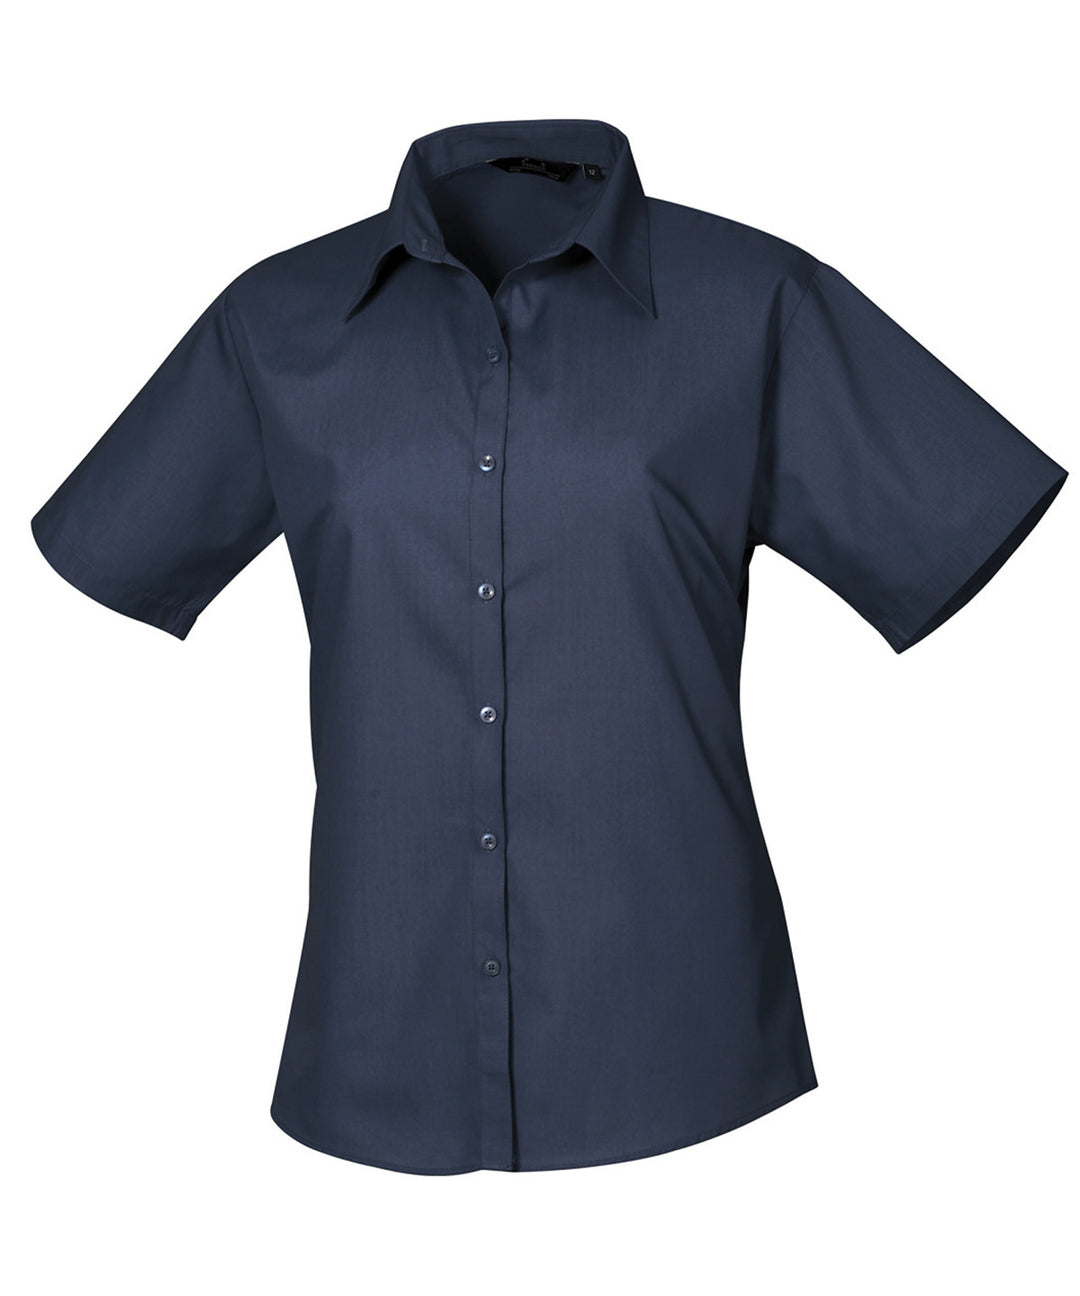 Women's short sleeve poplin blouse (Blue)